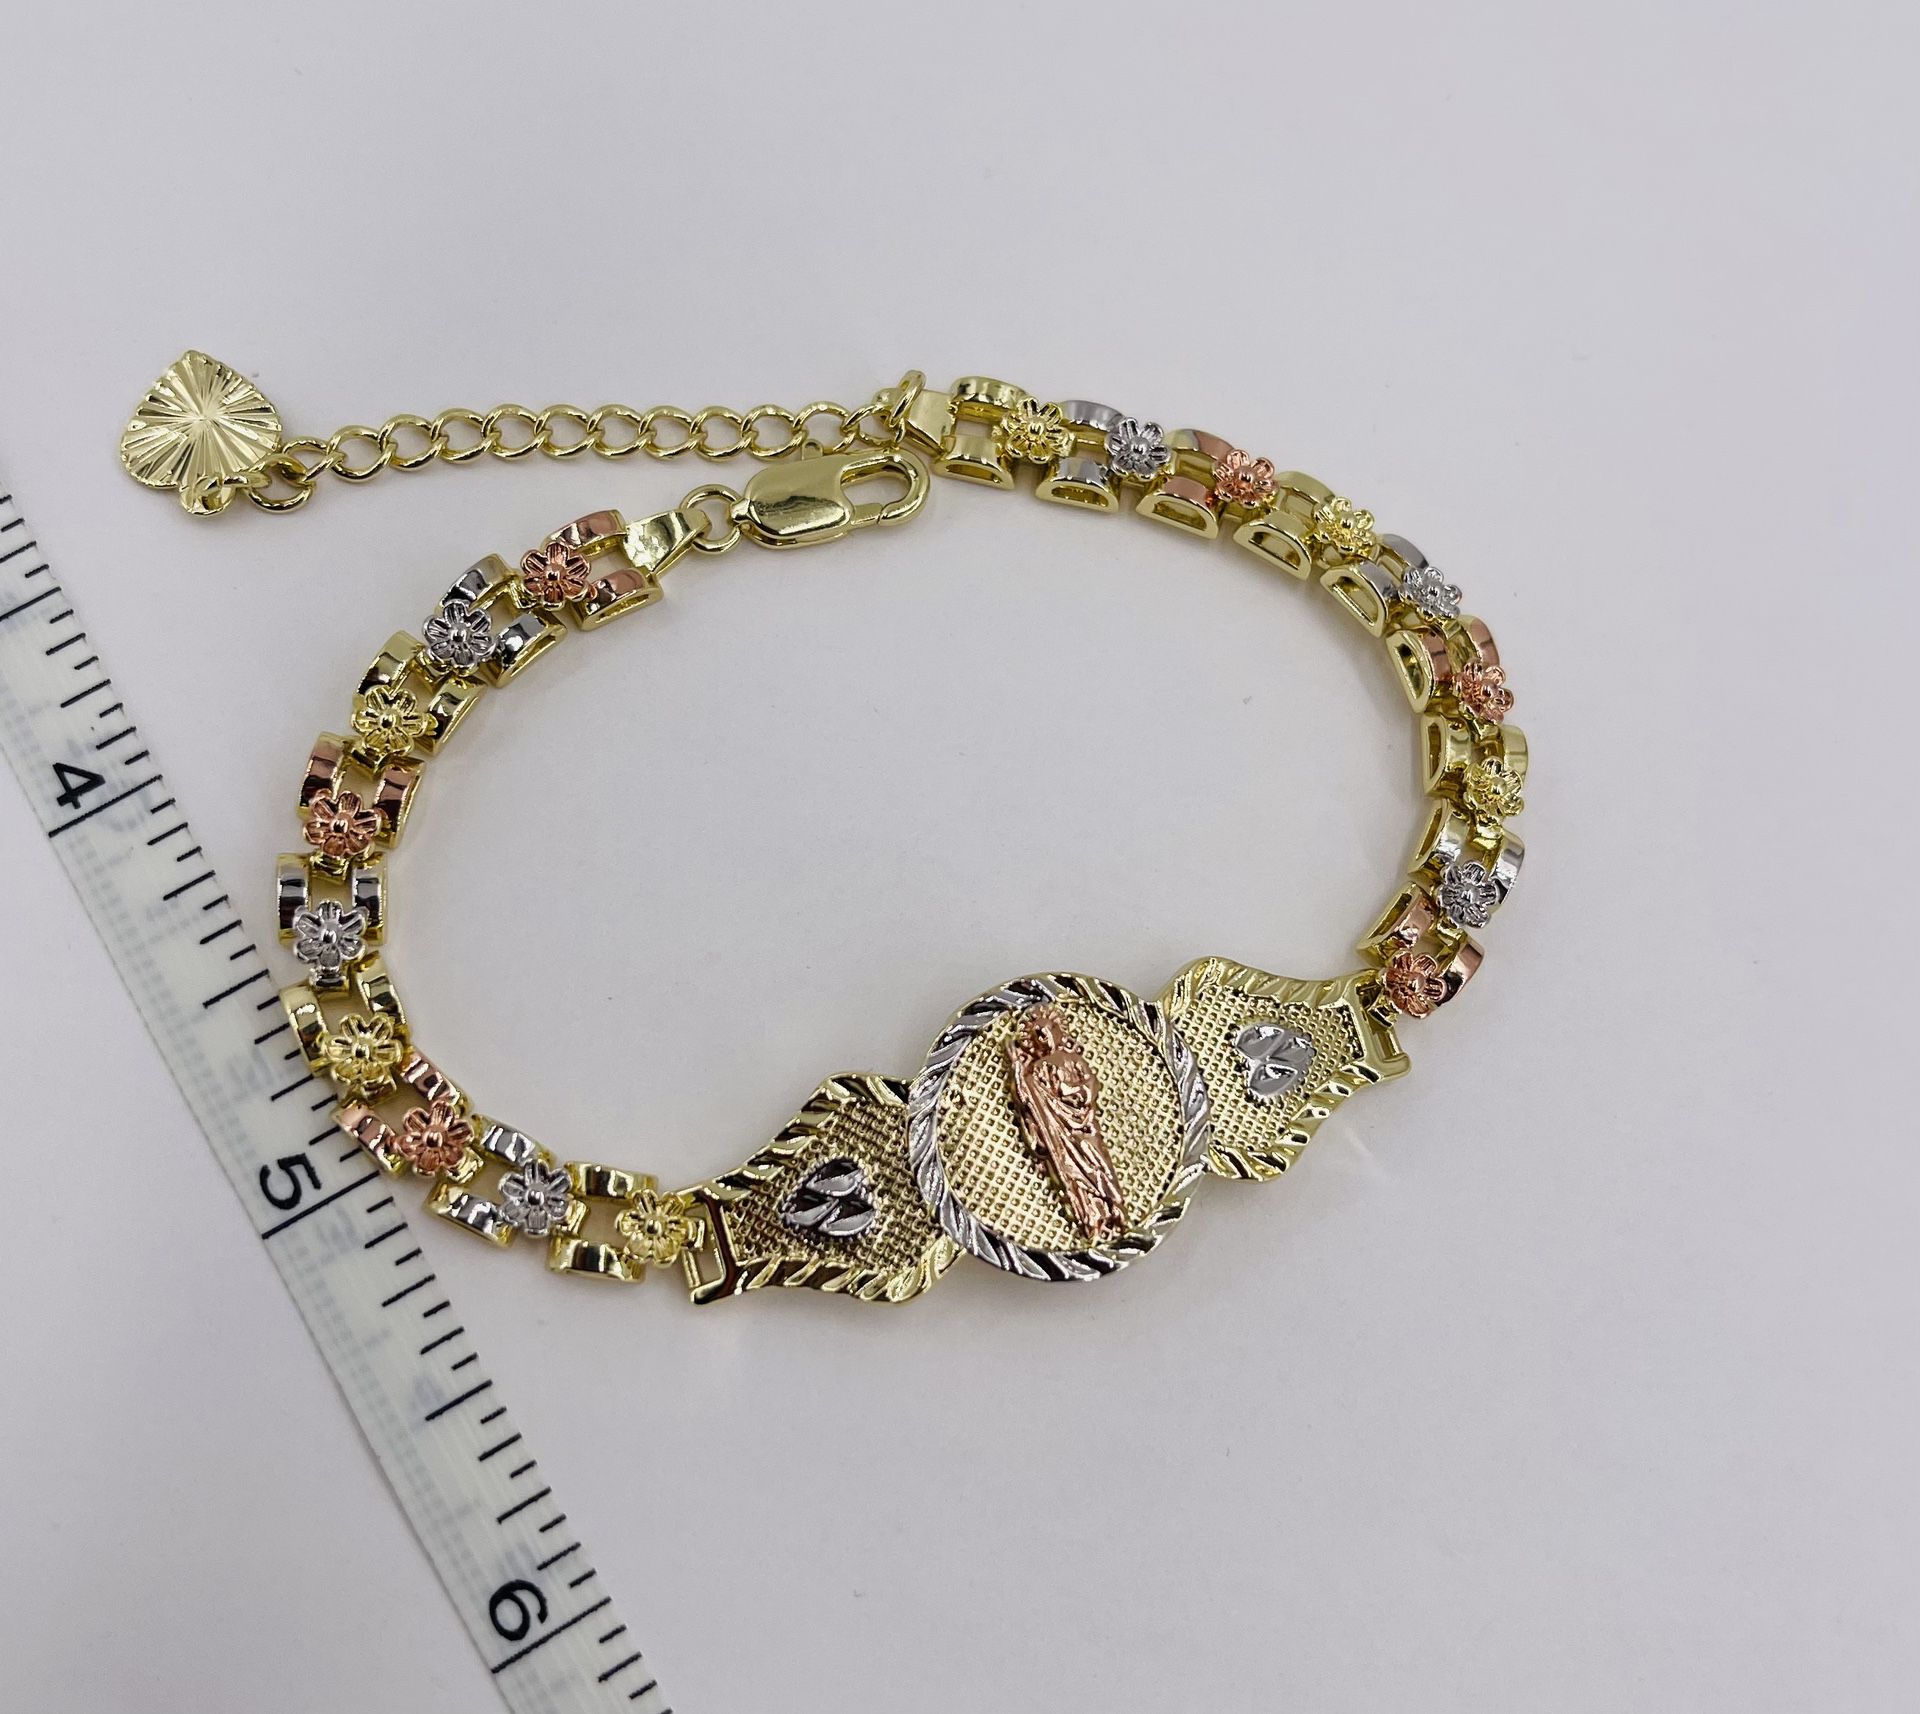 San Judas Pulsera Oro Laminado 18k/Bracelet Gold Plated 18k